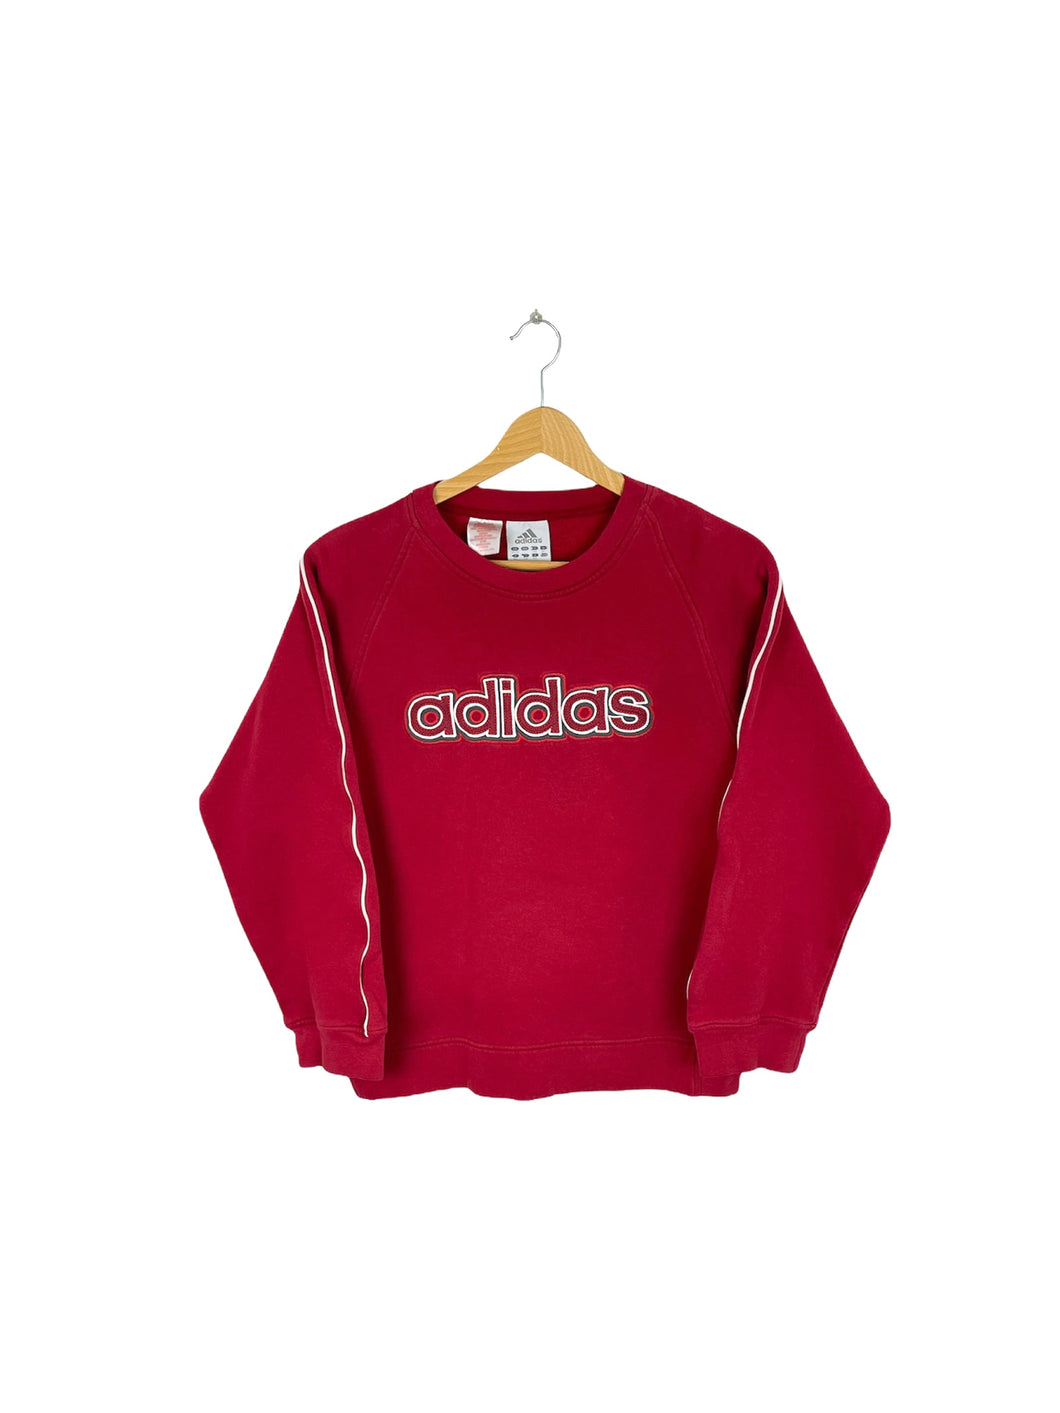 Adidas Sweatshirt - XSmall